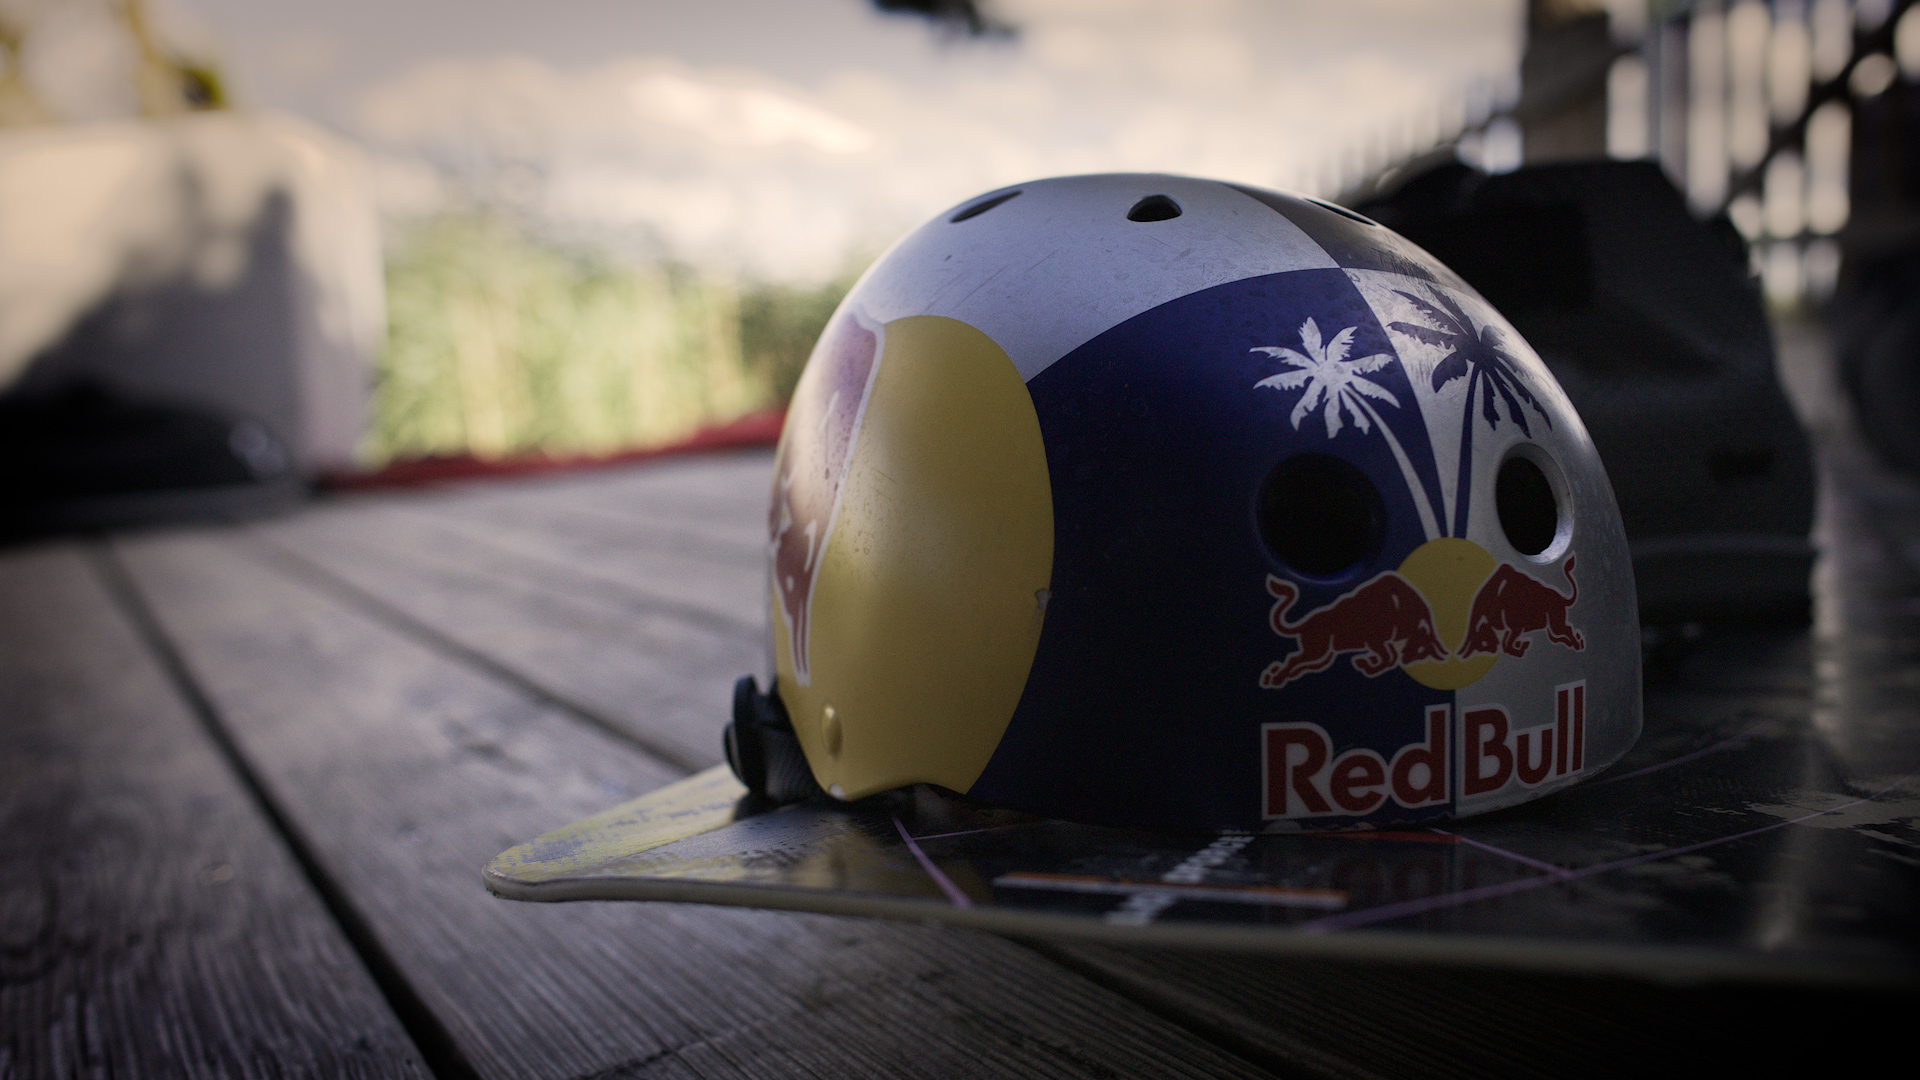 Red Bull Brettljause | Dokumentation